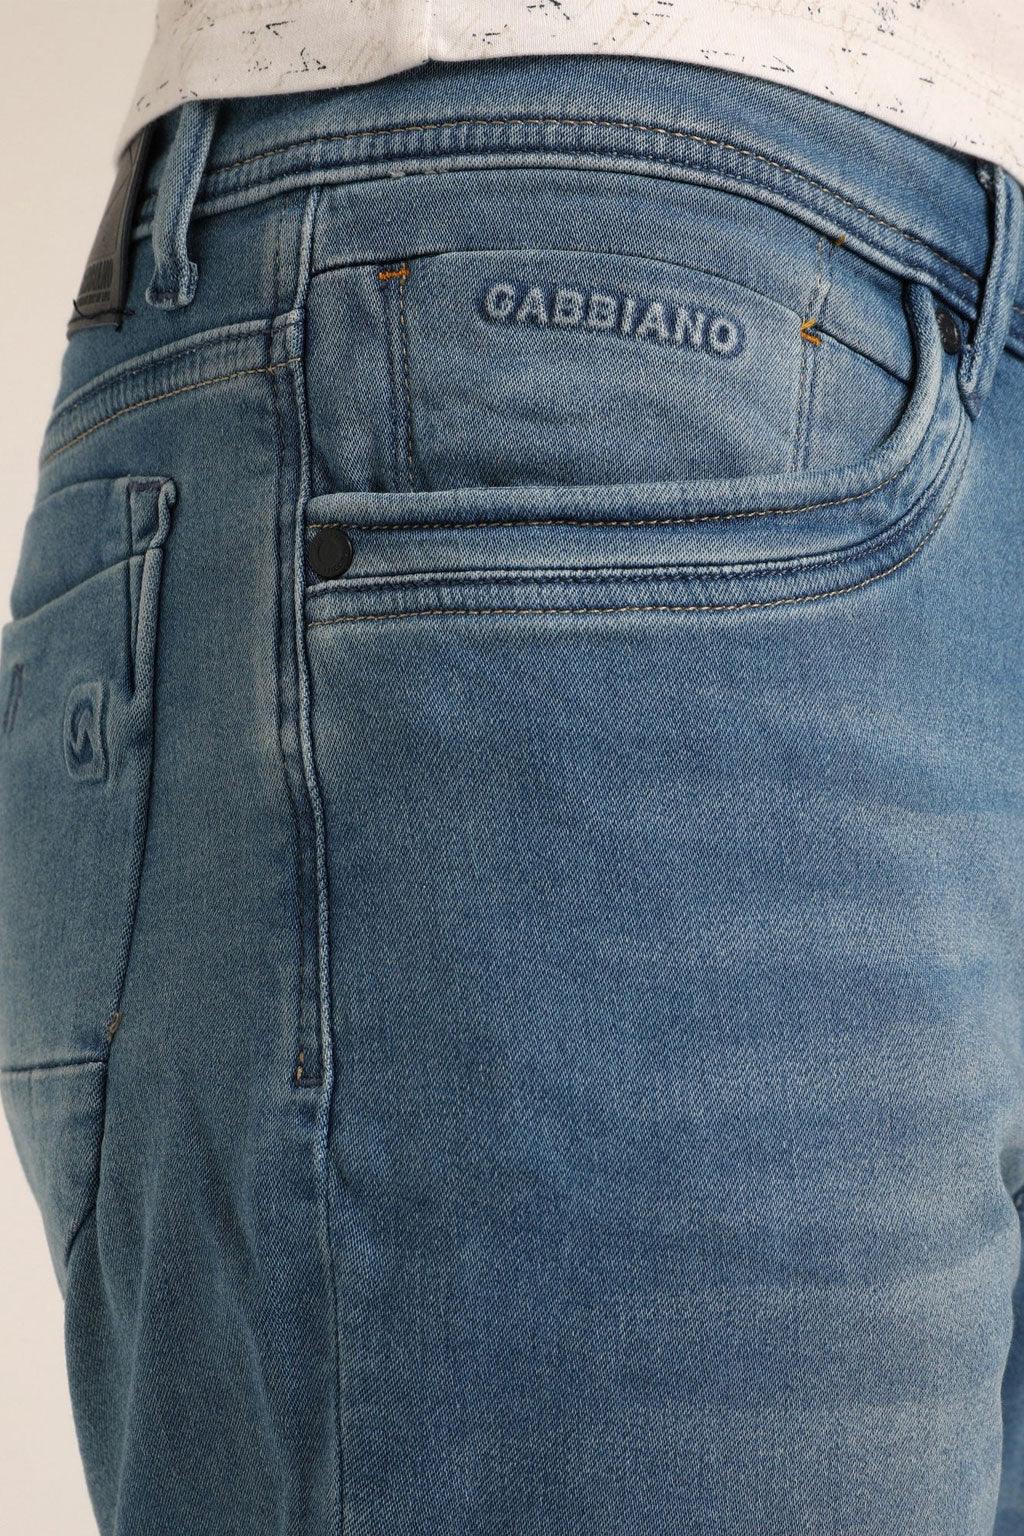 Gabbiano short - Big Boss | the menswear concept